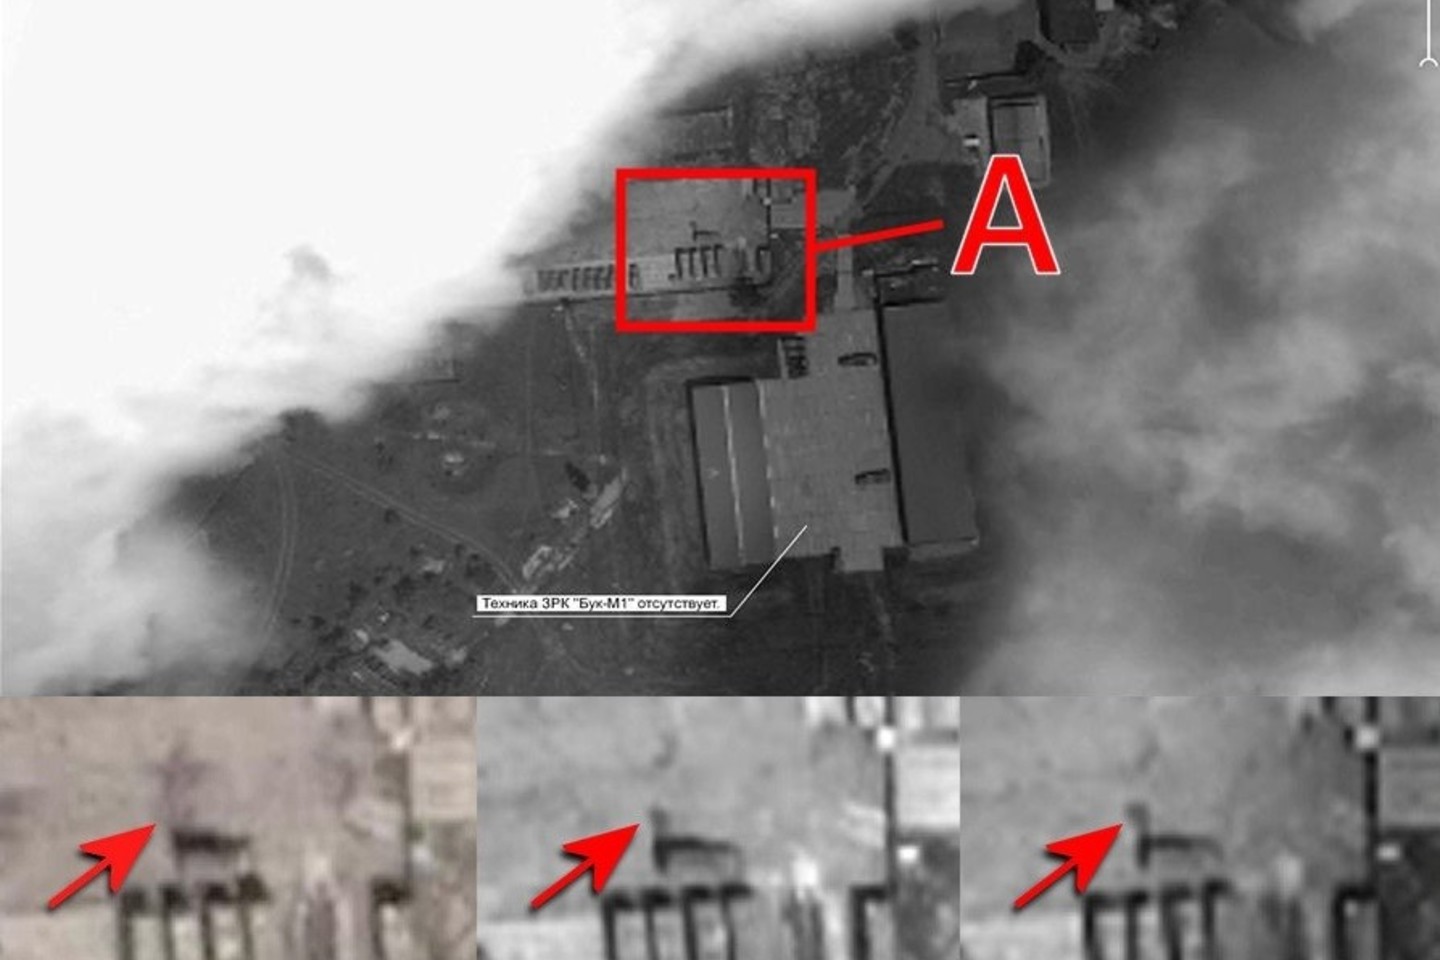 Rusija pateikė palydovines nuotraukas (viršuje pažymėta A raide), neva įrodančias ukrainiečių kaltę, dėl 2014-ųjų liepos 17-osios „Malaysia airlines“ lėktuvo numušimo. Tačiau apatinėje nuotraukoje (iš kairės) aiškiai matyti tepalų nuo0tėkis, kuris buvo užfiksuotas dar 2014-ųjų birželį.<br>Bellingcat nuotr.